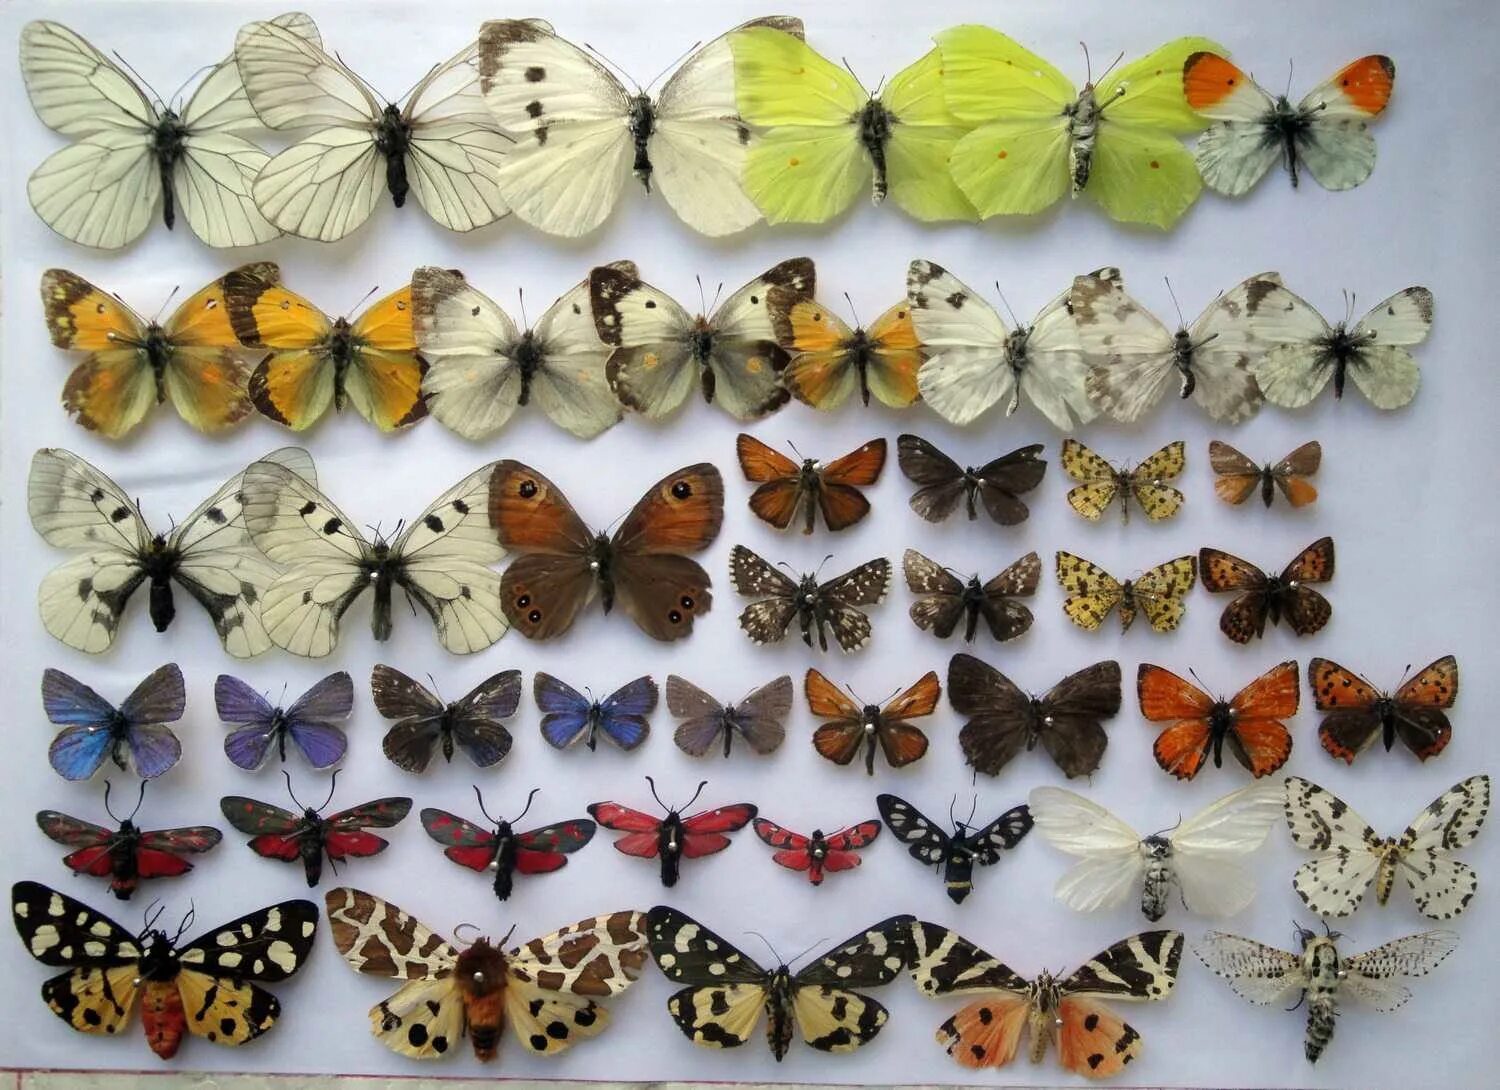 Коллекция энтомологическая "семейство бабочек". Ипатьевский монастырь коллекция бабочек Кострома. Коллекция бабочек в Ипатьевском монастыре. Энтомологическая коллекция бабочек.